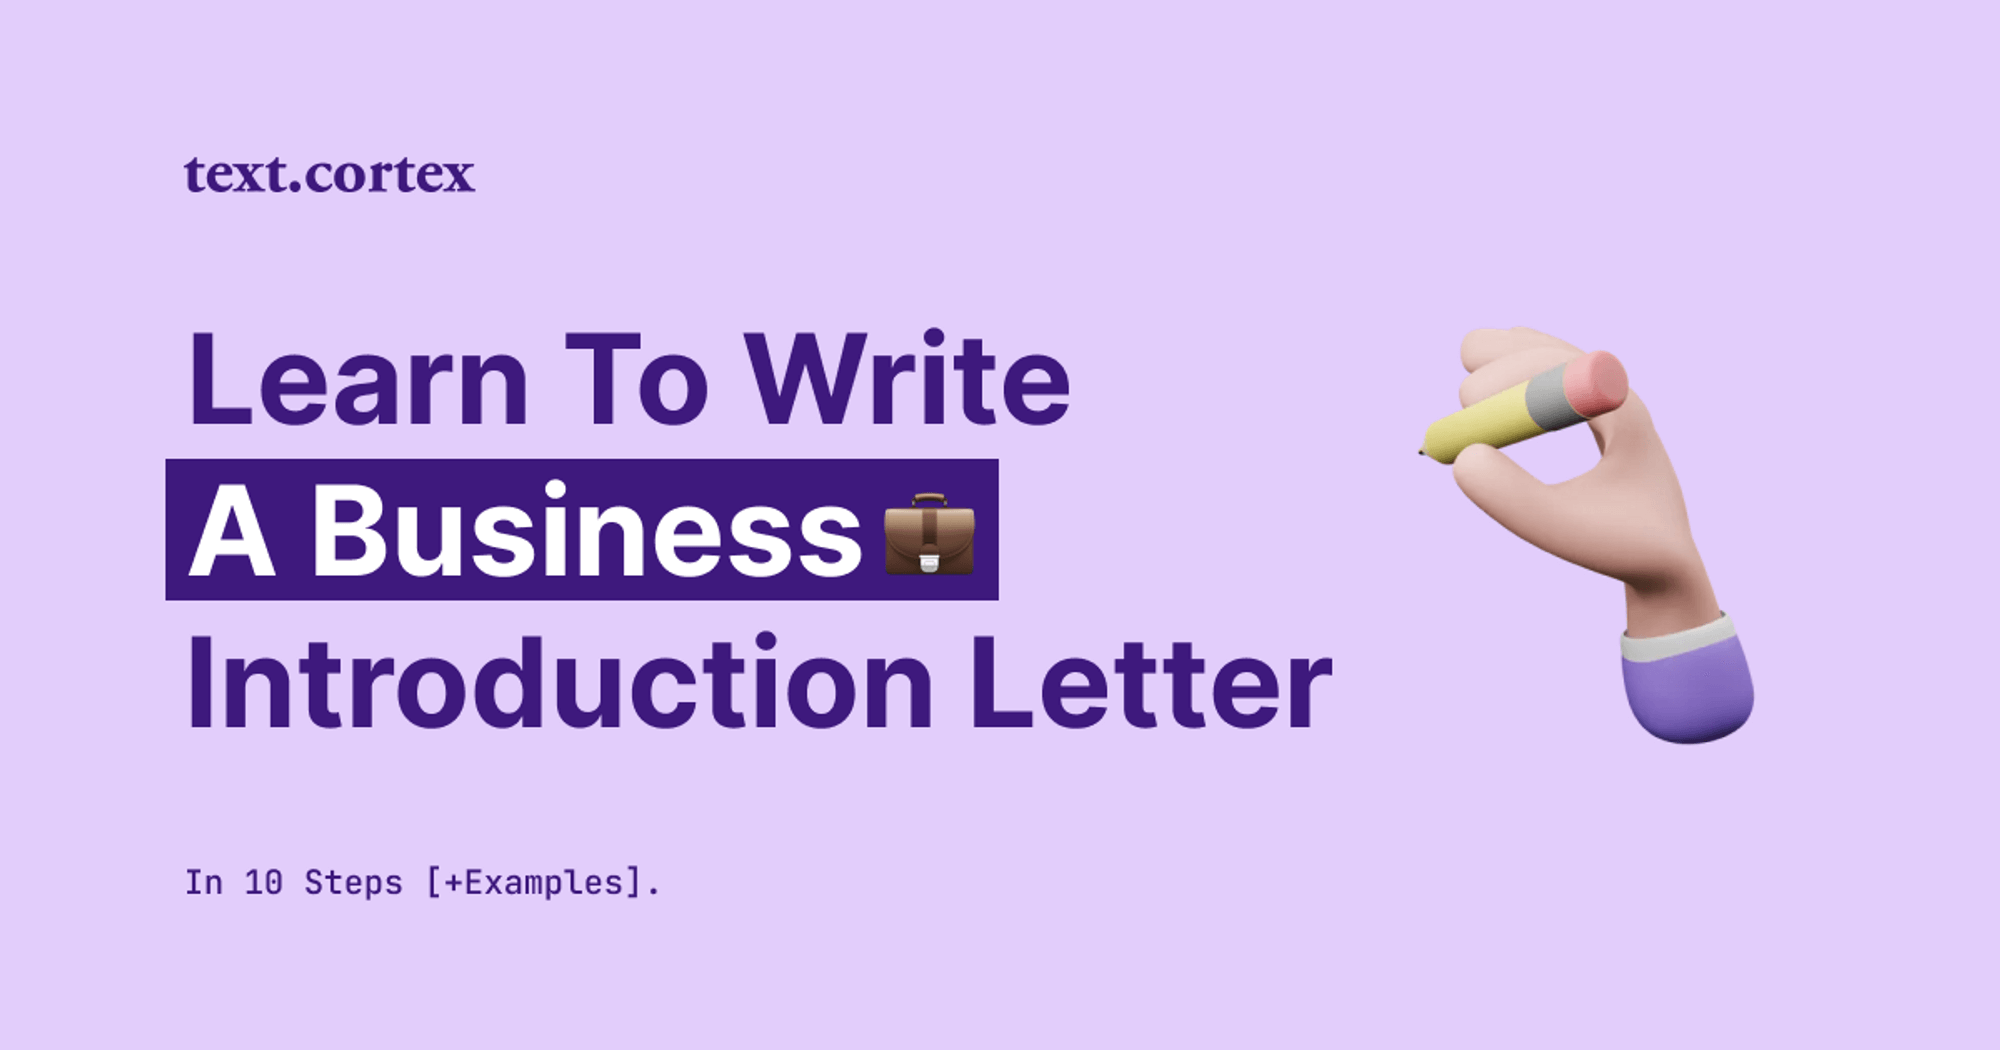 Comment rédiger une lettre de présentation d'entreprise en 10 étapes [+Exemples]